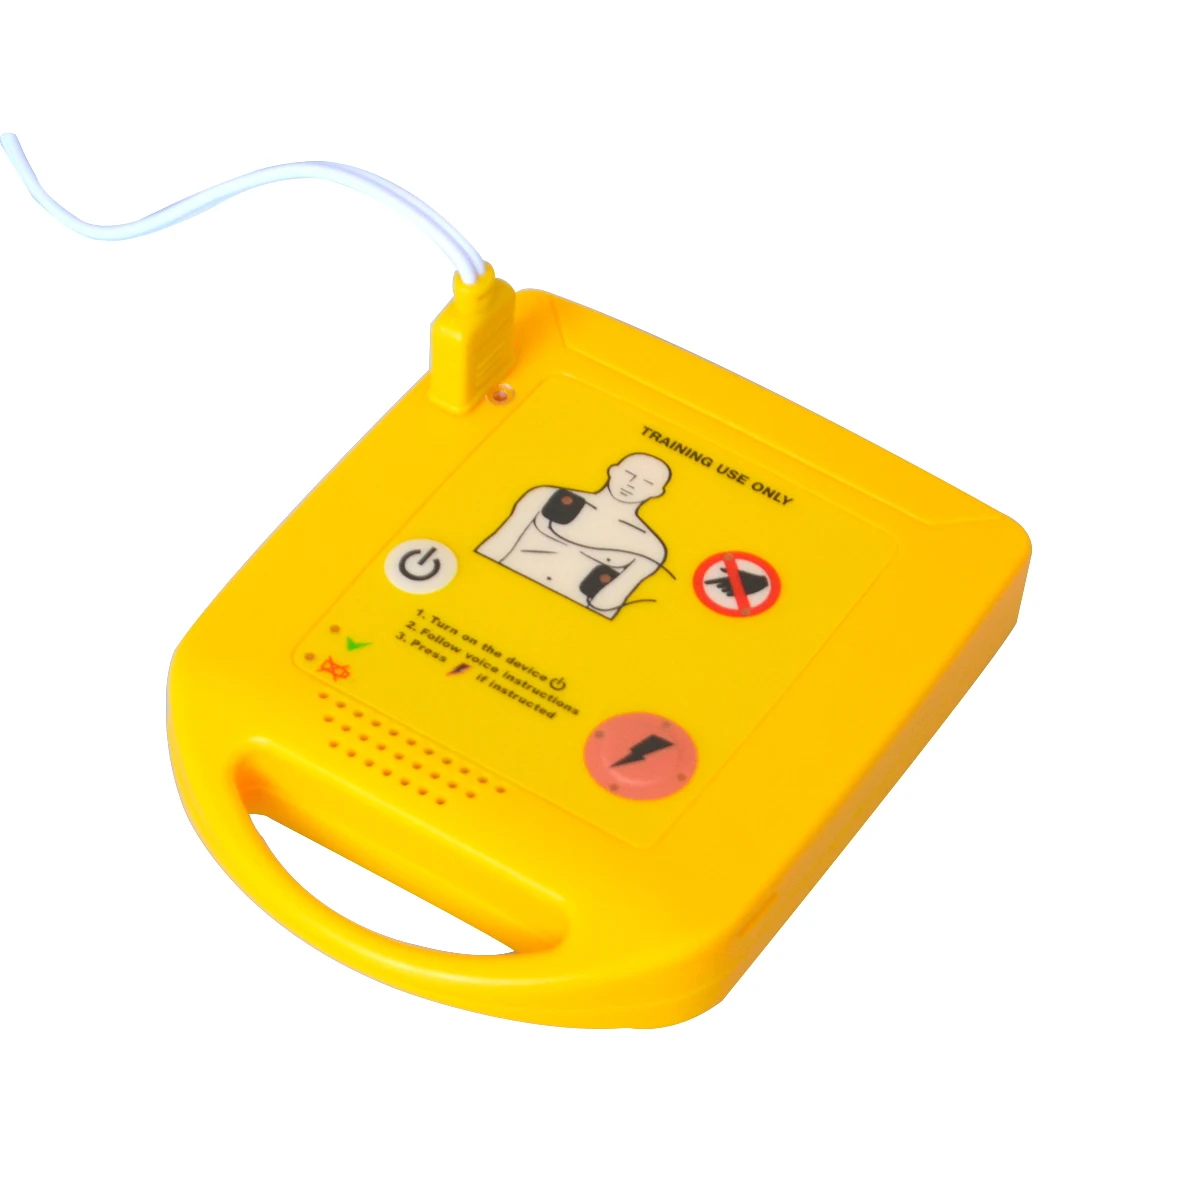 Мини-тренажер AED автоматизированный кардиоплегочный дефибриллятор для реанимационного обучения устройство первой помощи на испанском языке+ 1 CPR лицевой щит